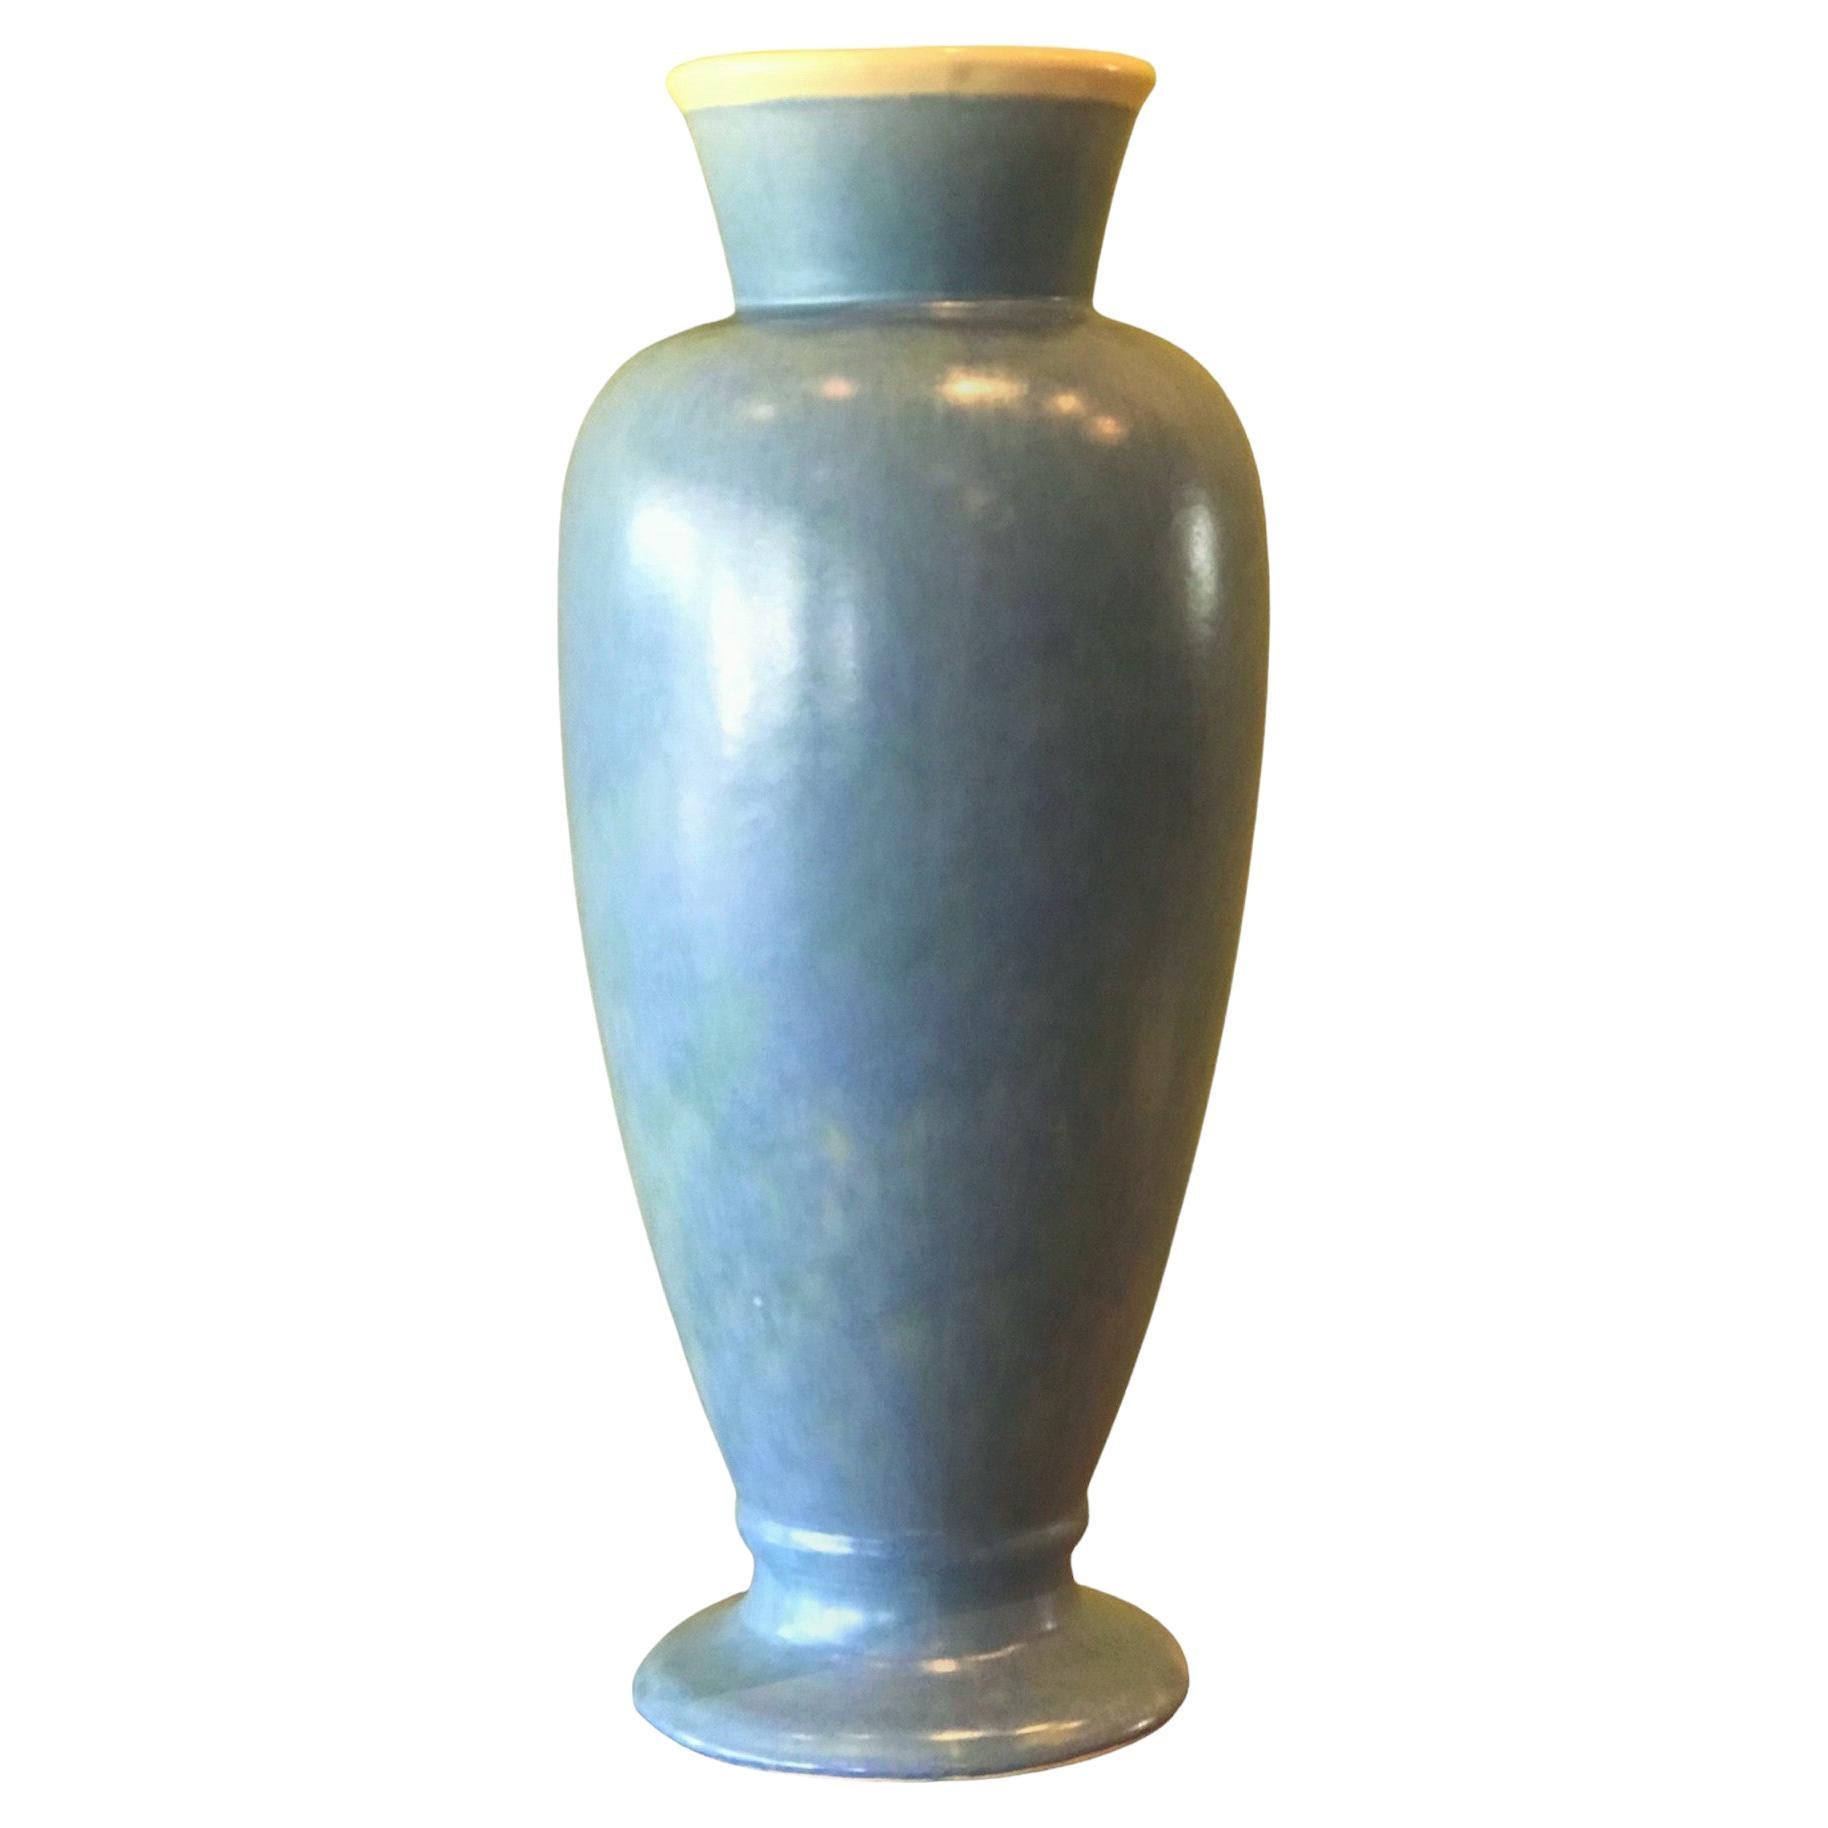 Vase en poterie de grande taille par Weller Pottery des années 1920 avec une forme rarement vue. De couleur bleu ciel à l'extérieur et blanc tendre à l'intérieur. Signé avec l'écriture Weller des années 1920. En très bon état.  Légère usure due à